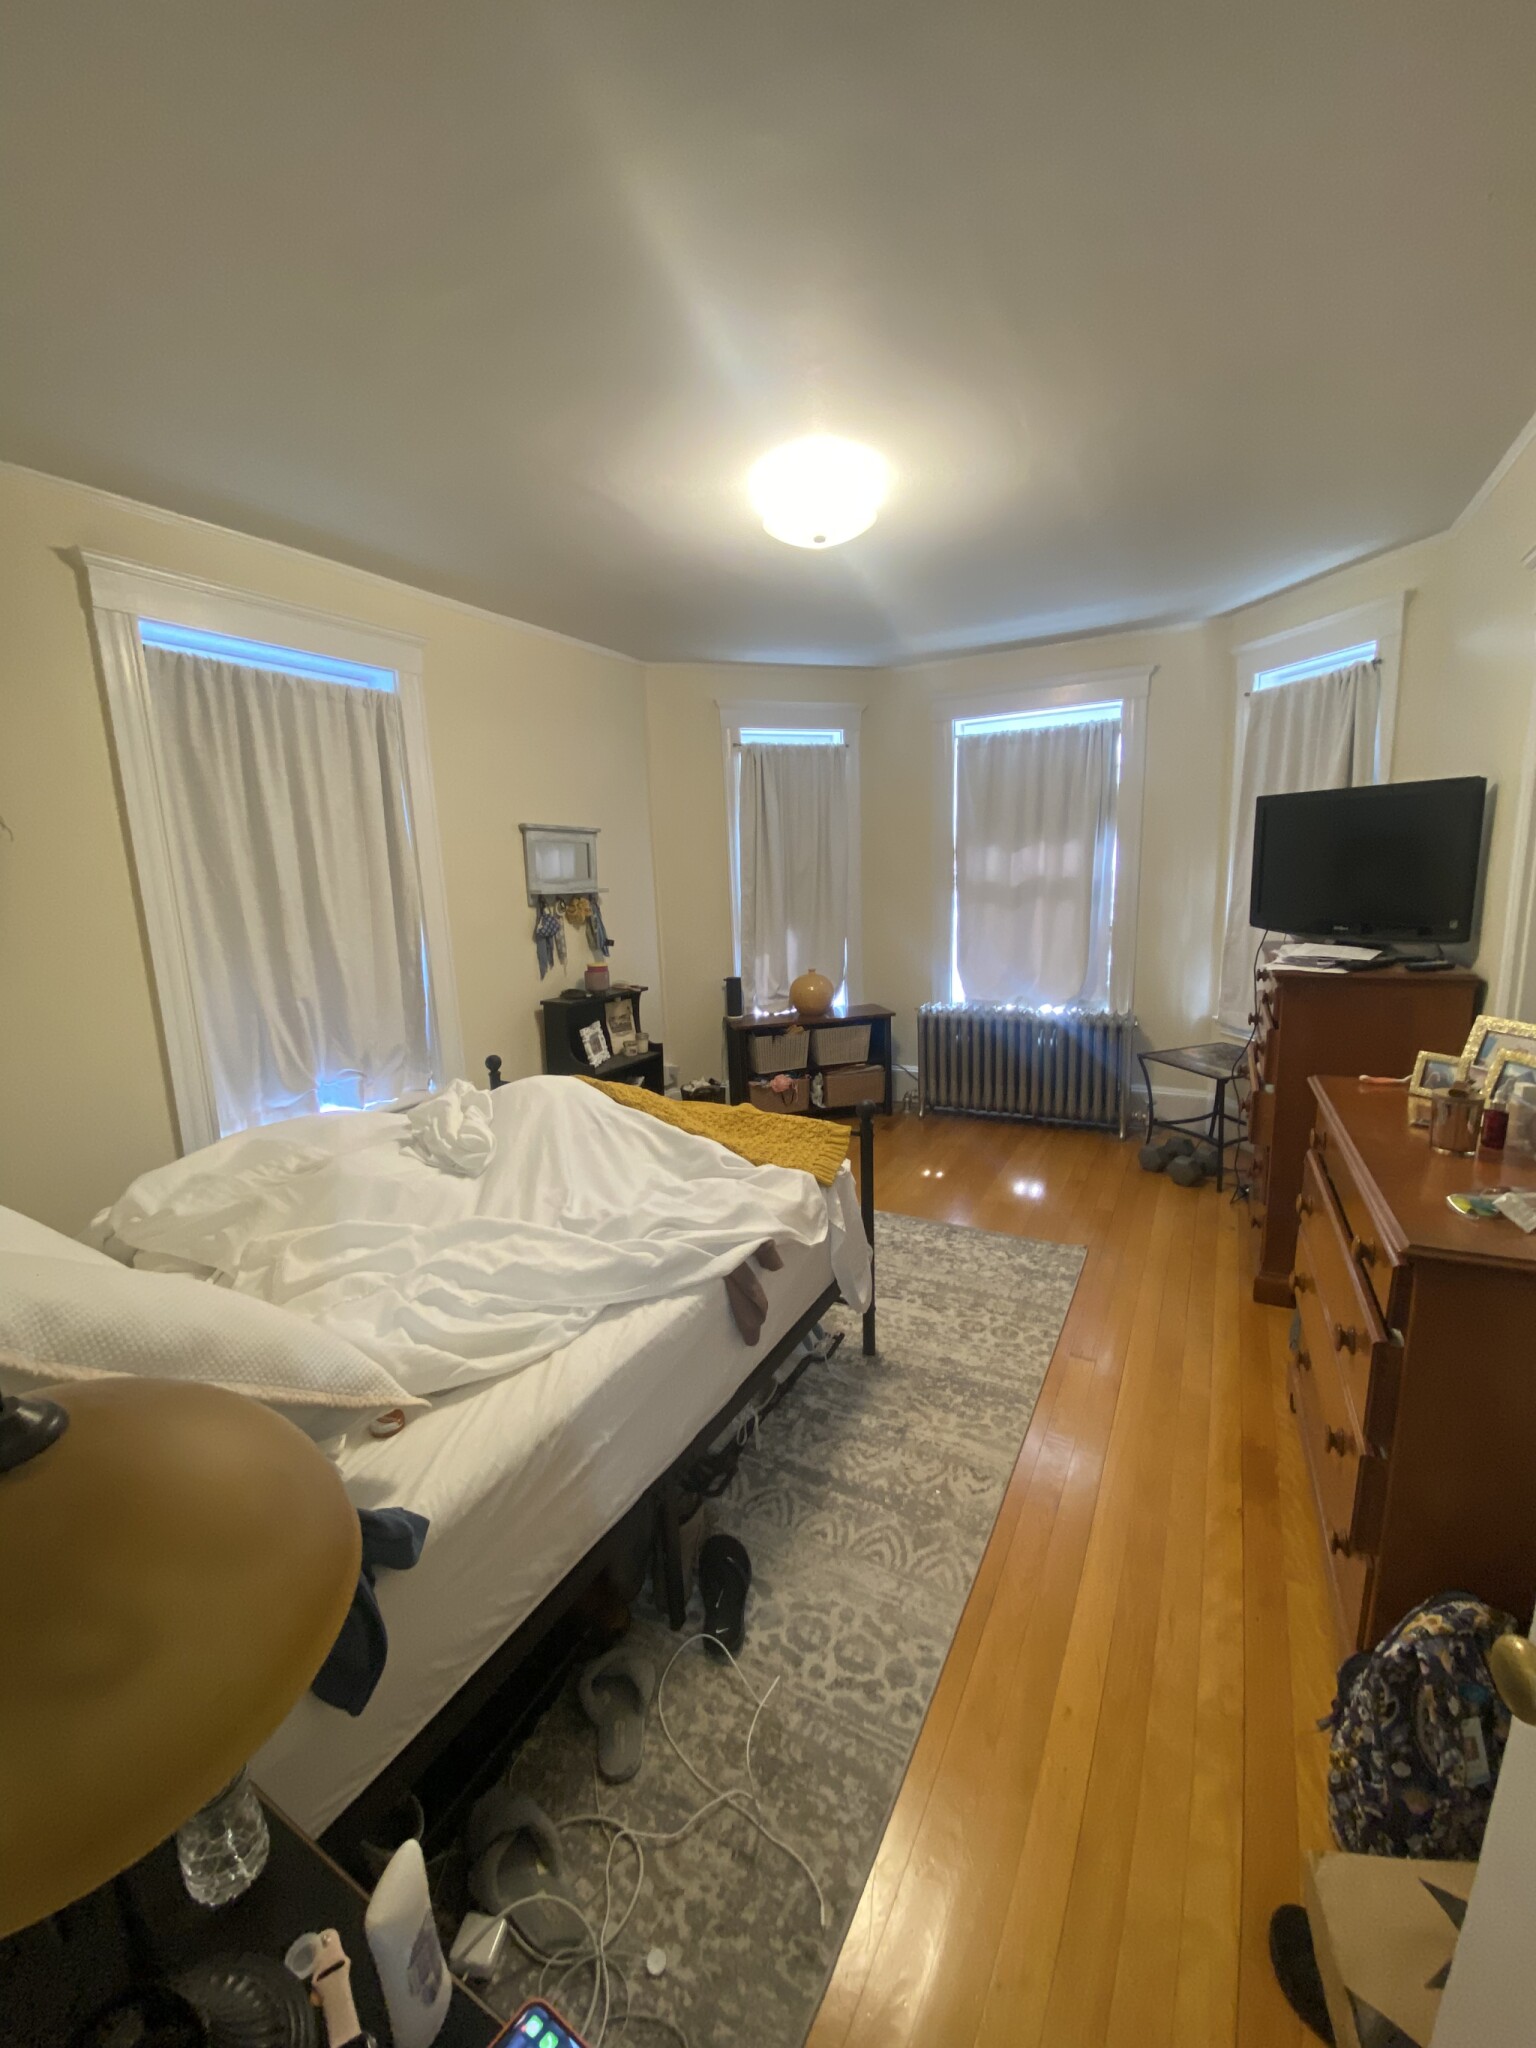 Photos of apartment on Fairfield St.,Cambridge MA 02140